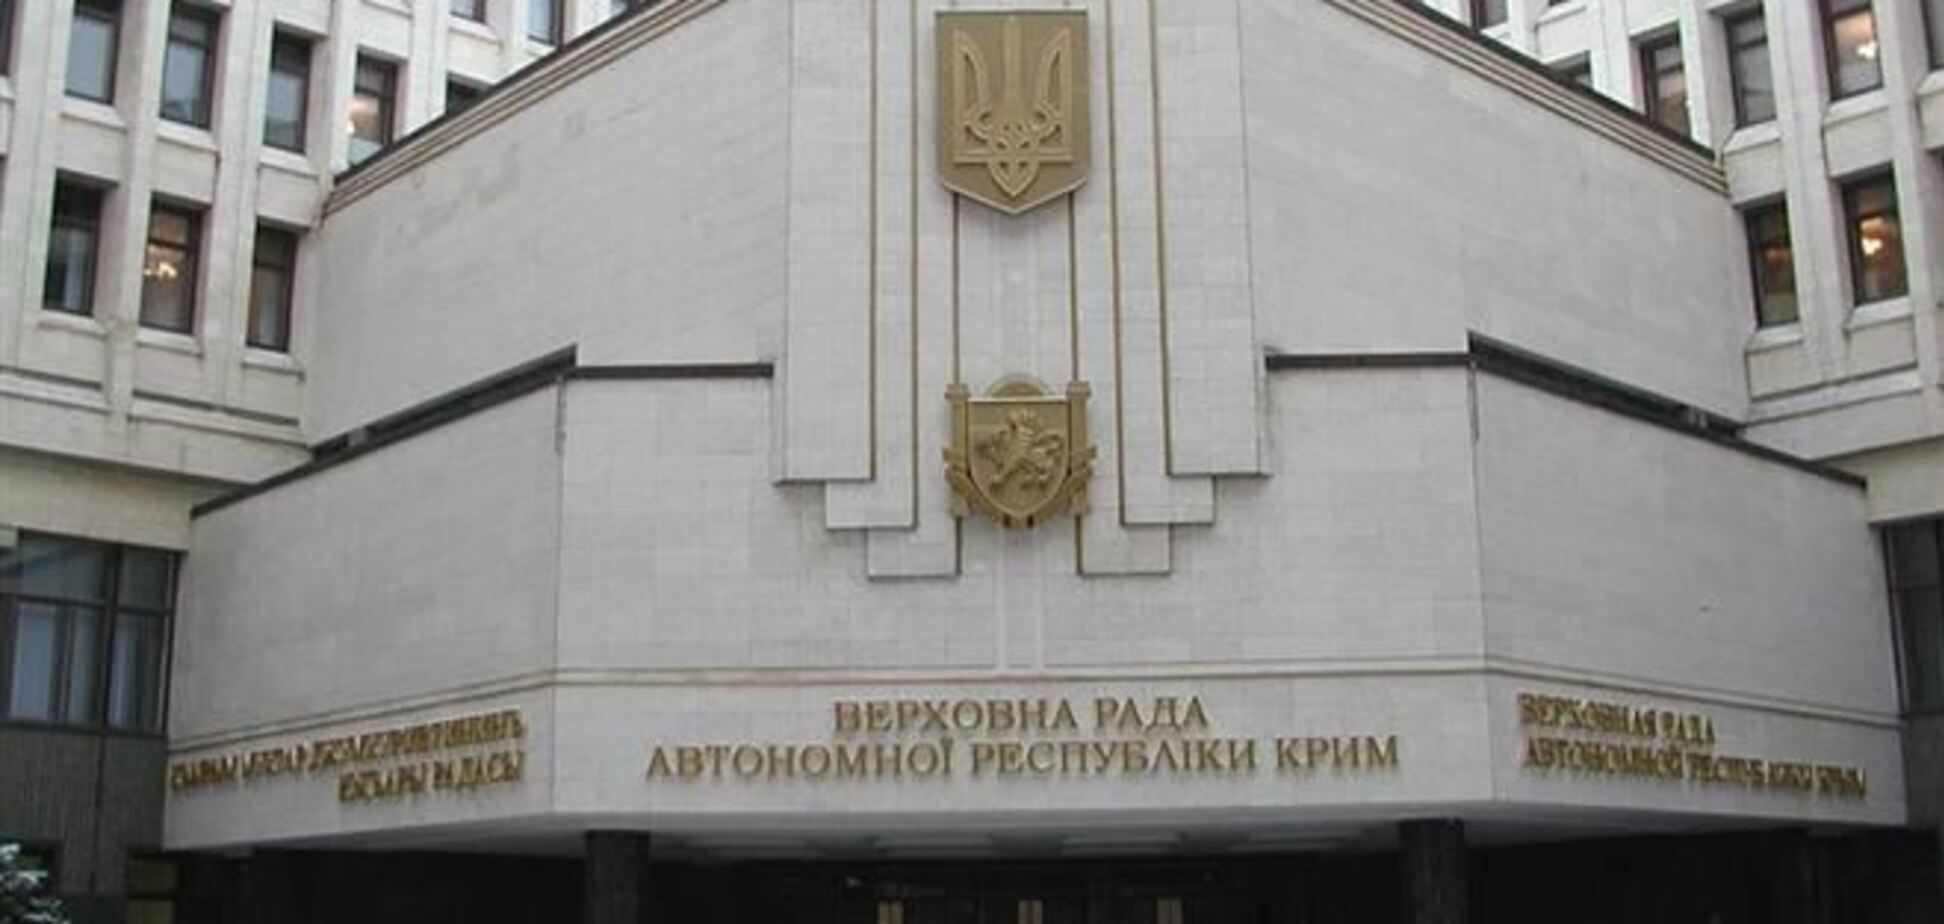 Верховный Совет АРК обнародовал бюллетень для голосования на общекрымском референдуме